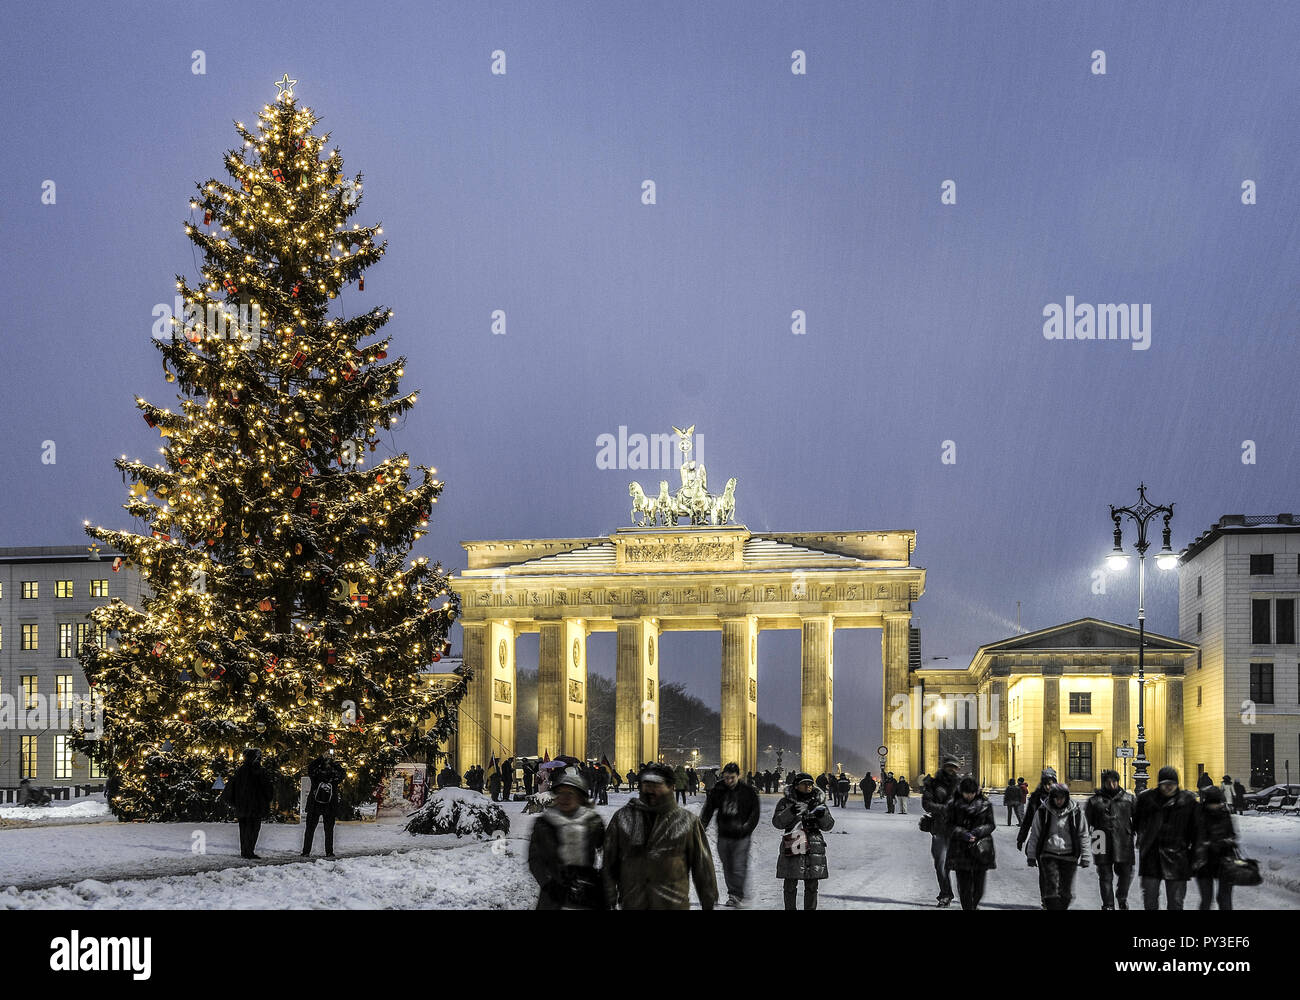 Weihnachtsbaum, Brandenburger Tor, Berlino, Deutschland Foto Stock